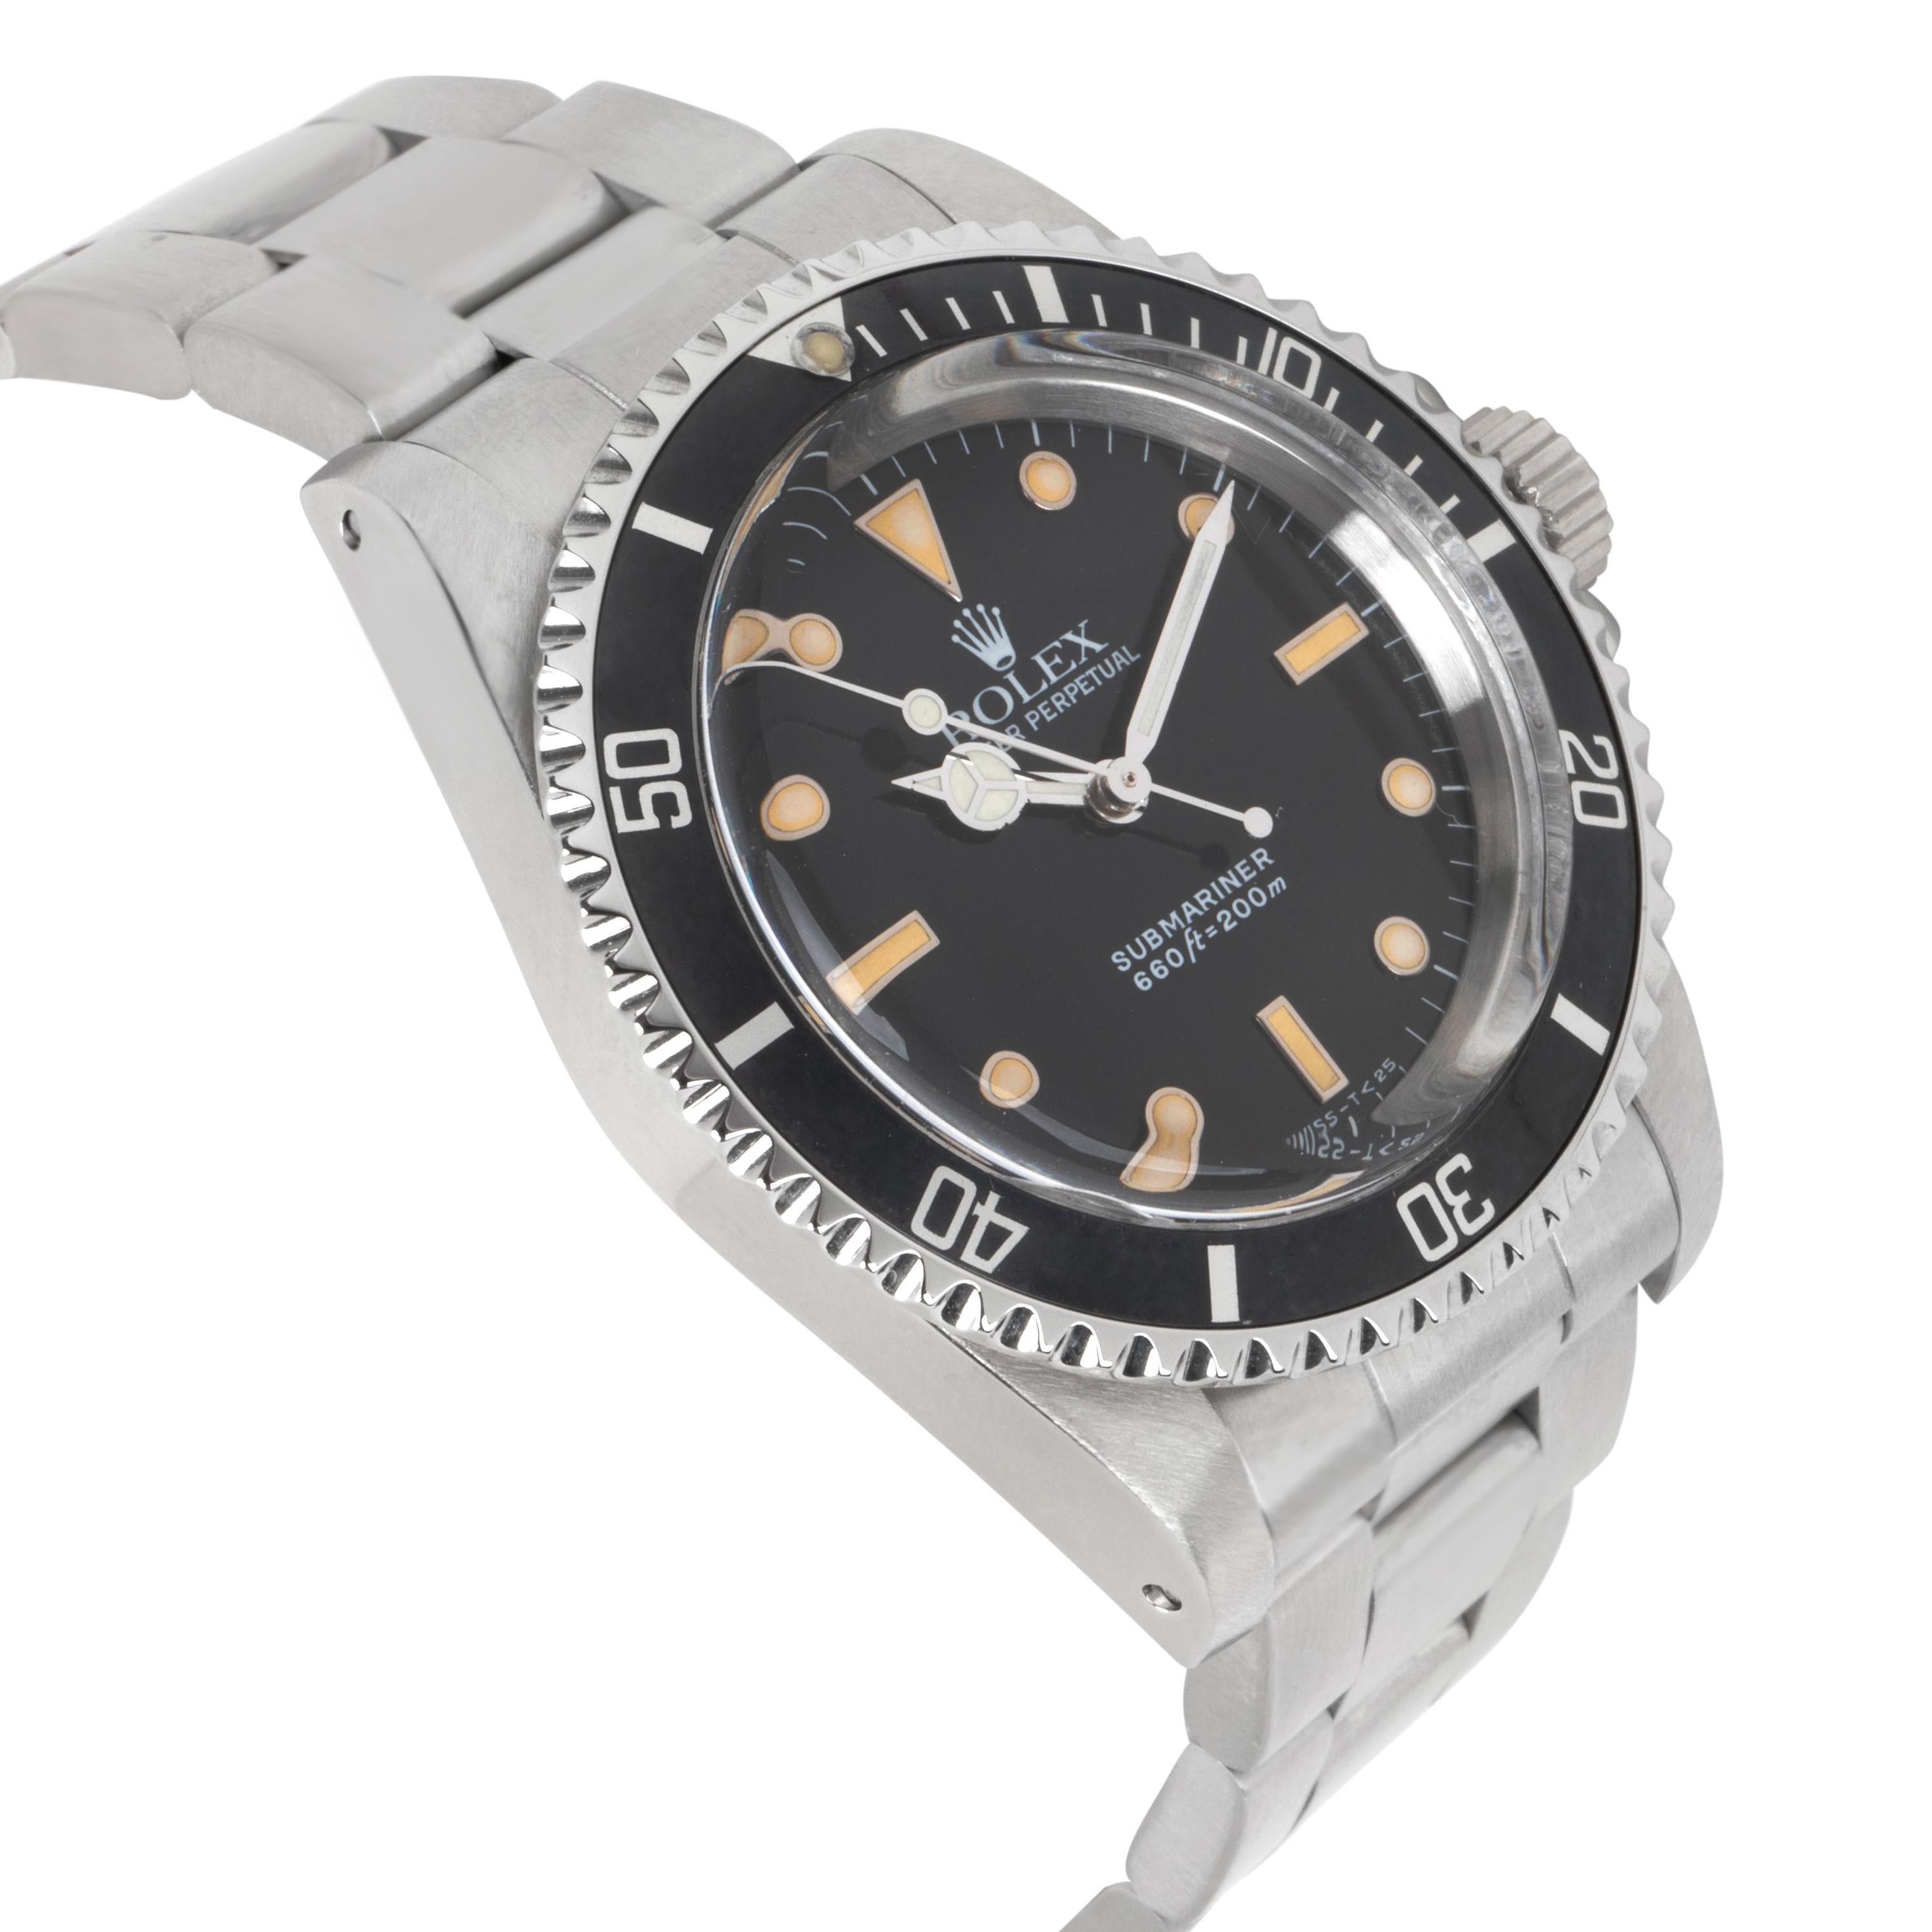 Rolex Submariner 5513 Men's Watch in Stainless Steel 1